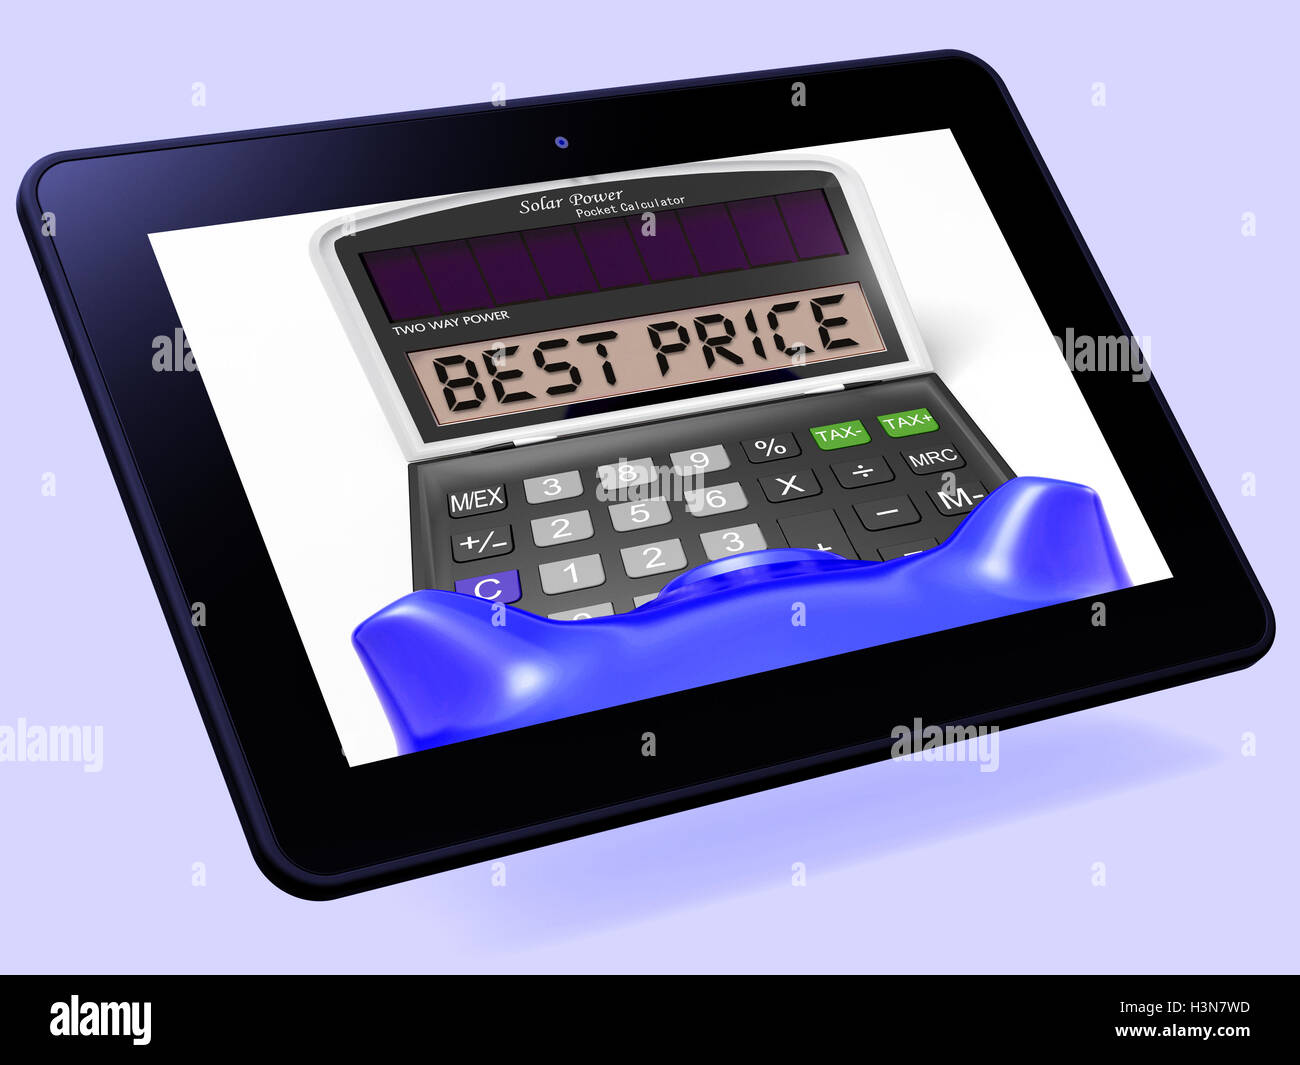 Miglior prezzo Calcolatrice mezzi Tablet occasioni sconti e risparmio Foto Stock